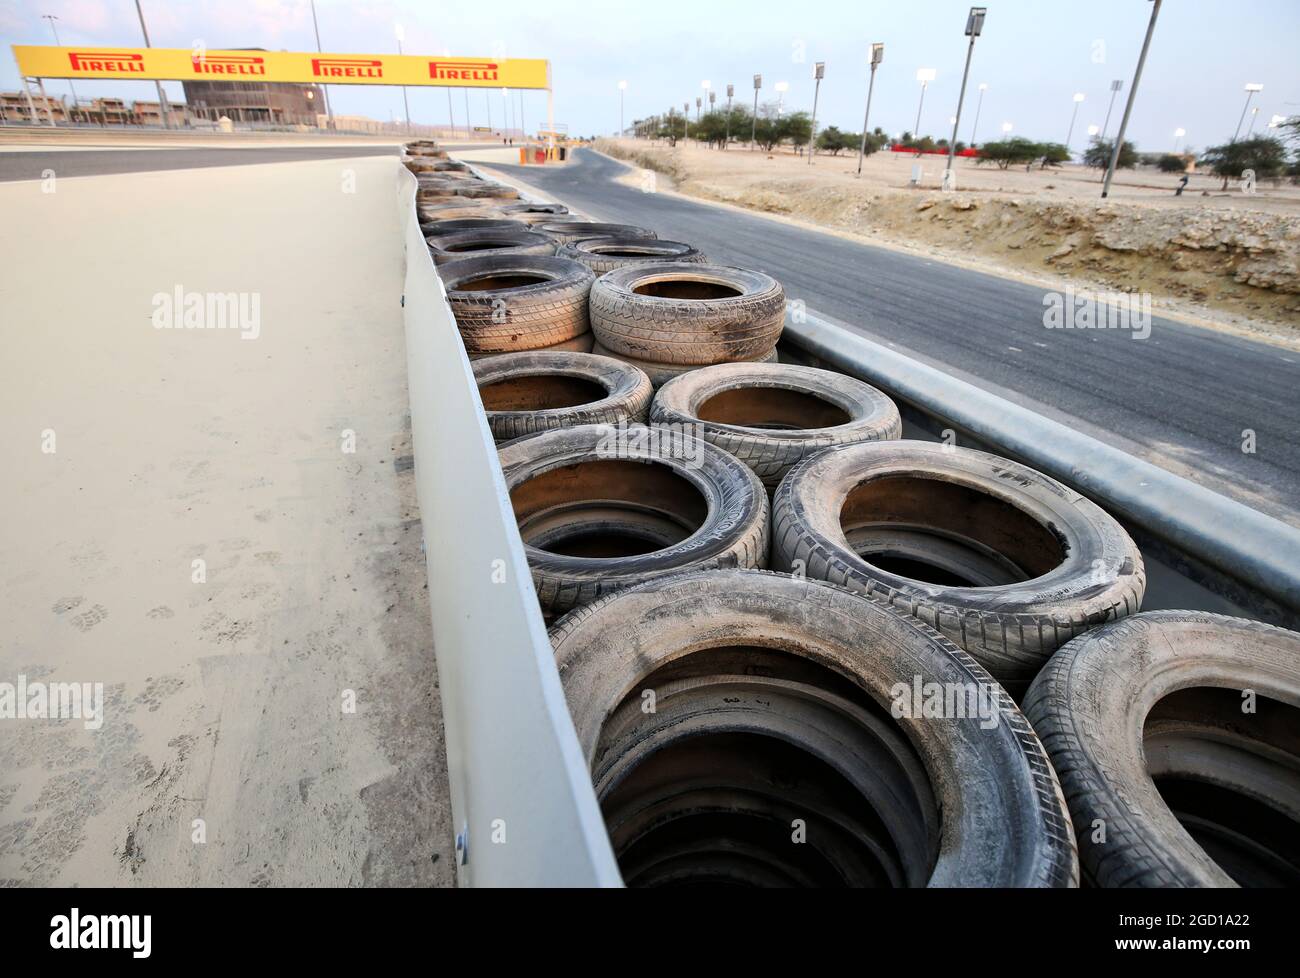 La barriera armco tra le curve 4 e 5 ha due strati di pneumatici con un binding trasportatore-nastro installato dopo il crash del Romain Grosjean (fra) Haas F1 Team nel Gran Premio del Bahrain. Gran Premio di Sakhir, giovedì 3 dicembre 2020. Sakhir, Bahrein. Foto Stock